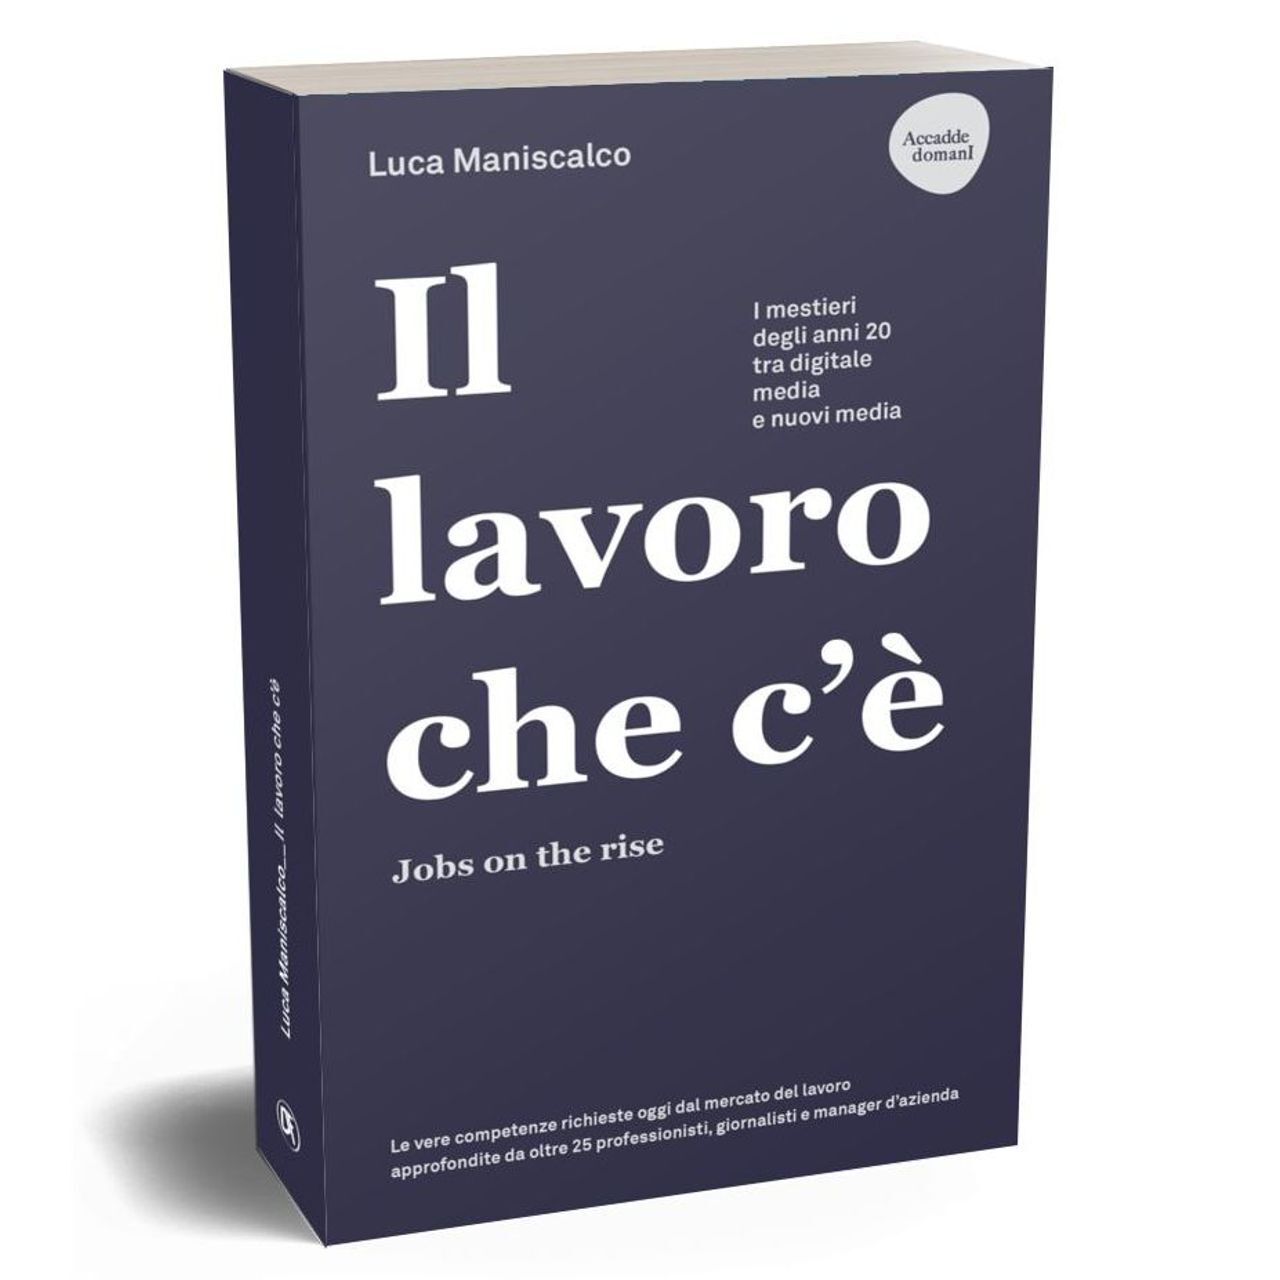 หน้าปกหนังสือ “งานที่มีอยู่ งานที่เพิ่มขึ้น” โดย Luca Maniscalco จัดพิมพ์โดย Dario Flaccovio Editore